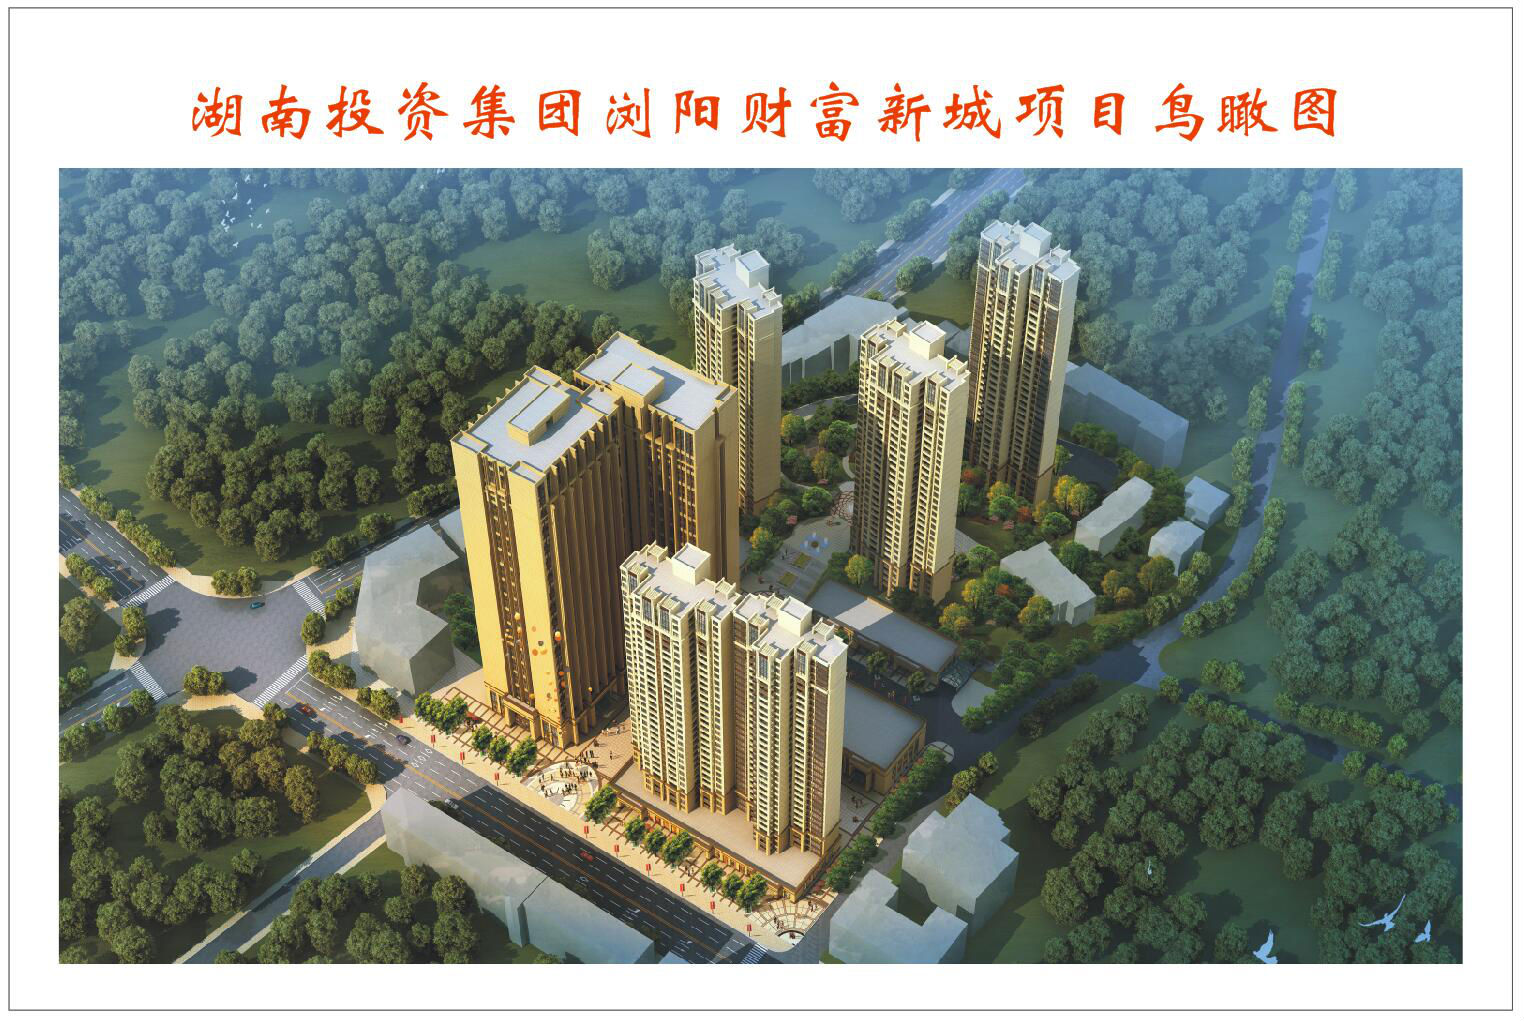 湖南浏阳河城镇建设发展有限公司